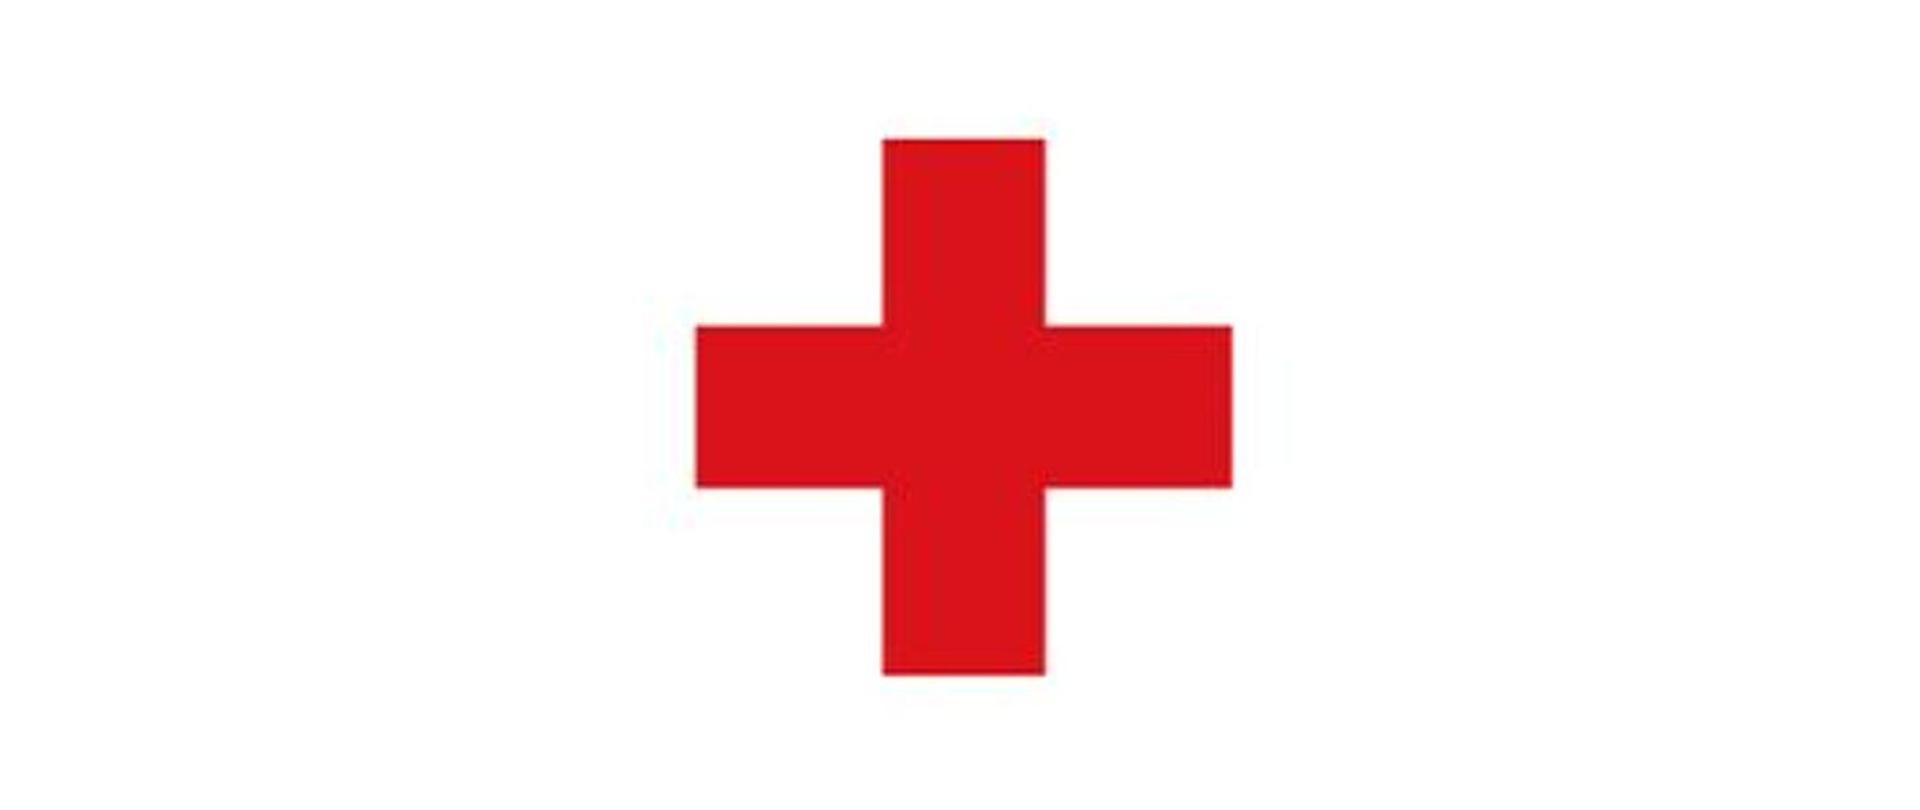 Zdjęcie przedstawia znak Polskiego Czerwonego Krzyża